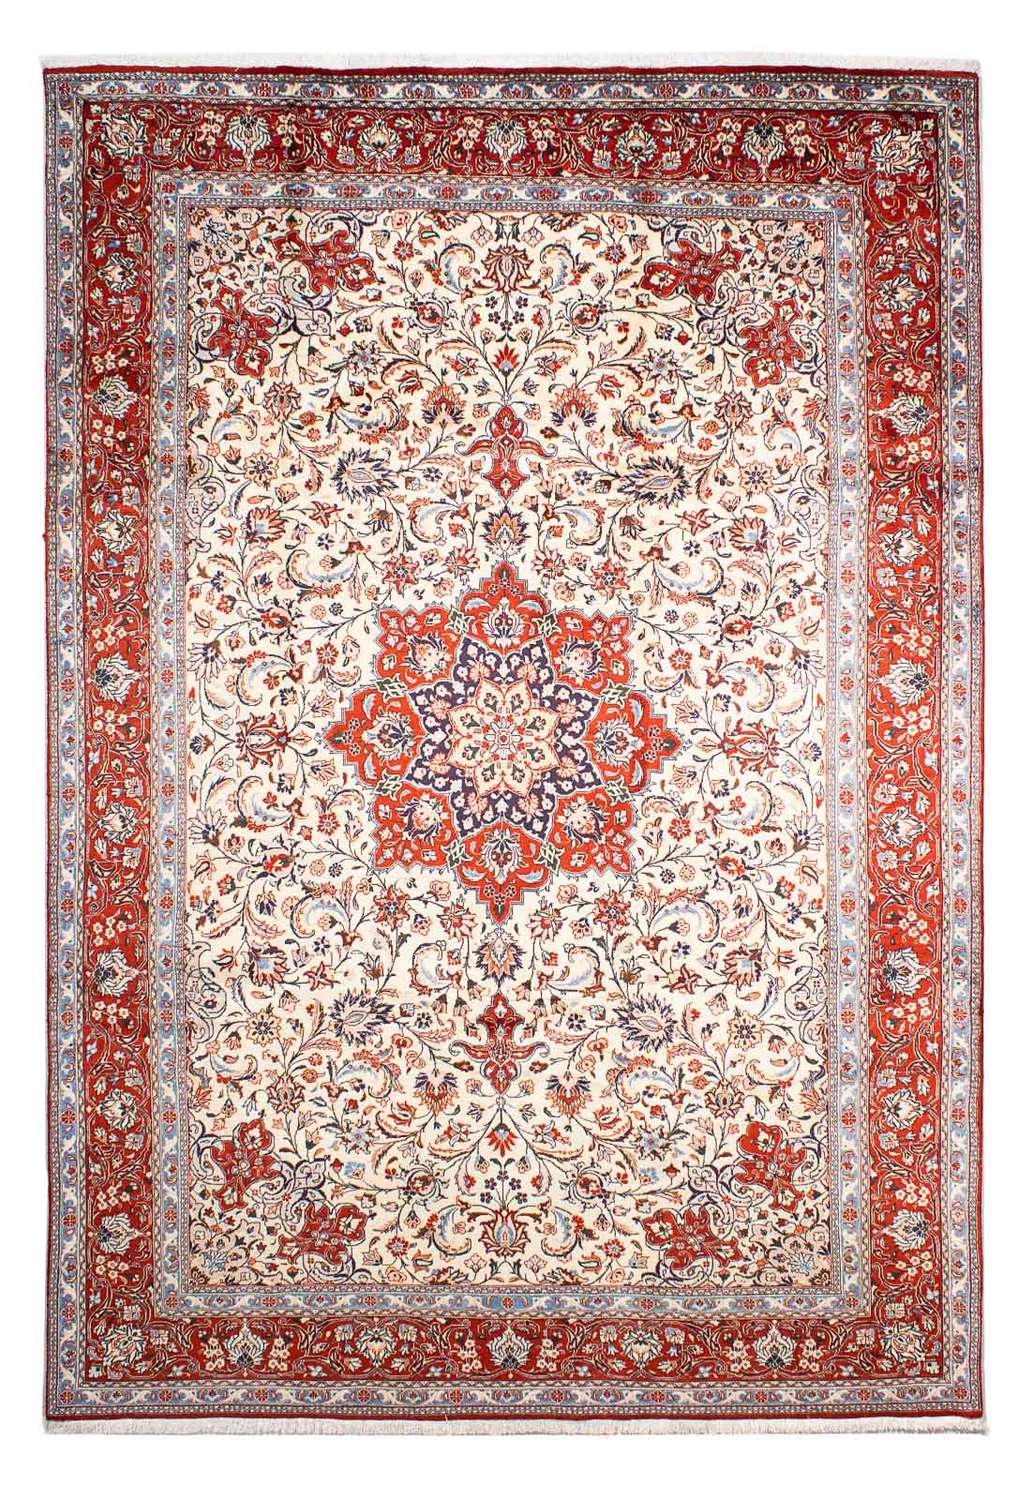 Persisk teppe - klassisk - 298 x 207 cm - beige